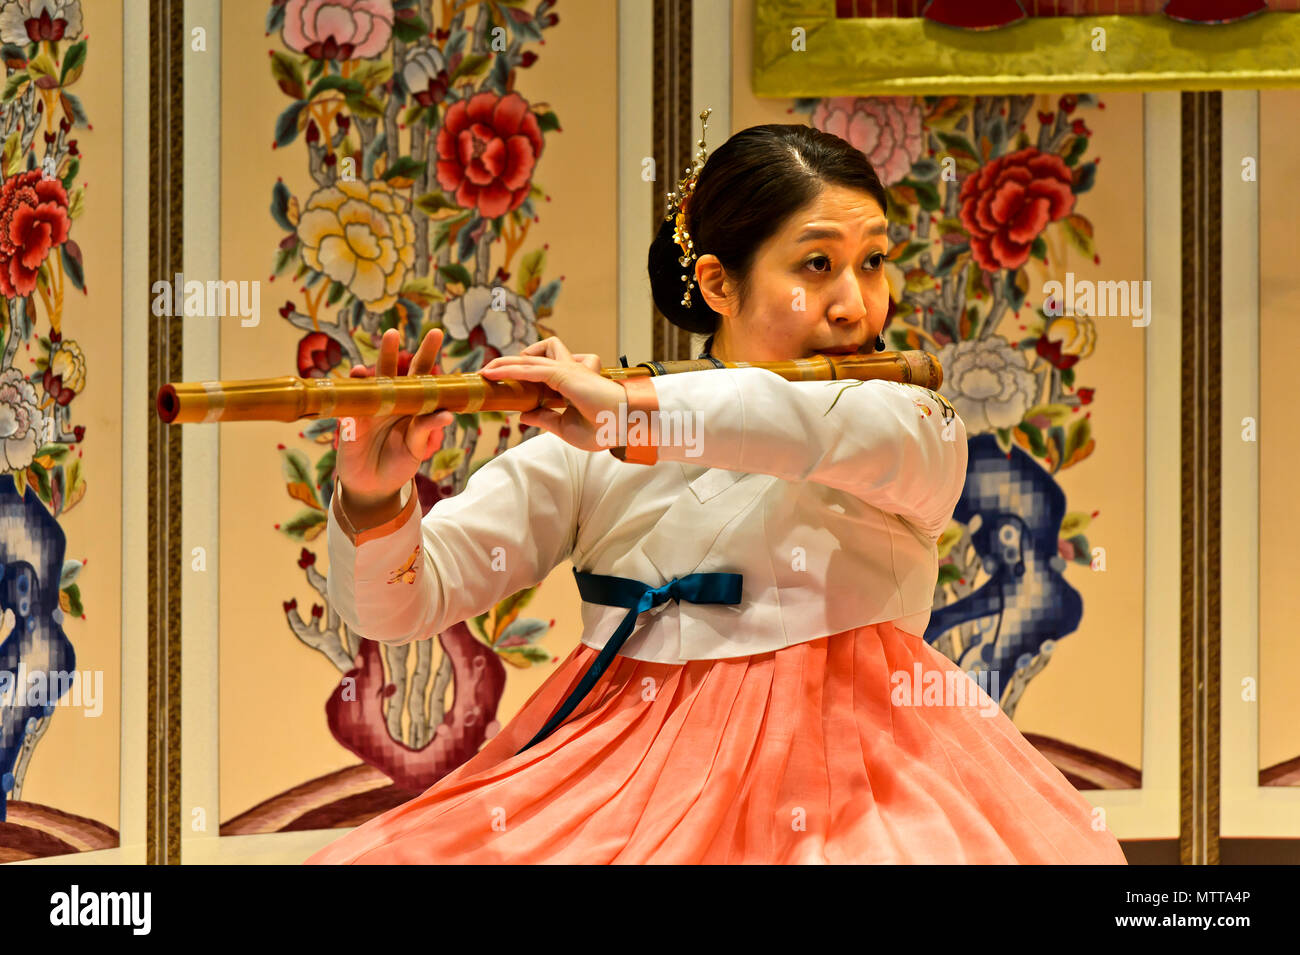 Femme jouant de la flûte traversière en bambou traditionnel daegeum, l'aéroport international Incheon de Séoul, Séoul, Corée du Sud Banque D'Images